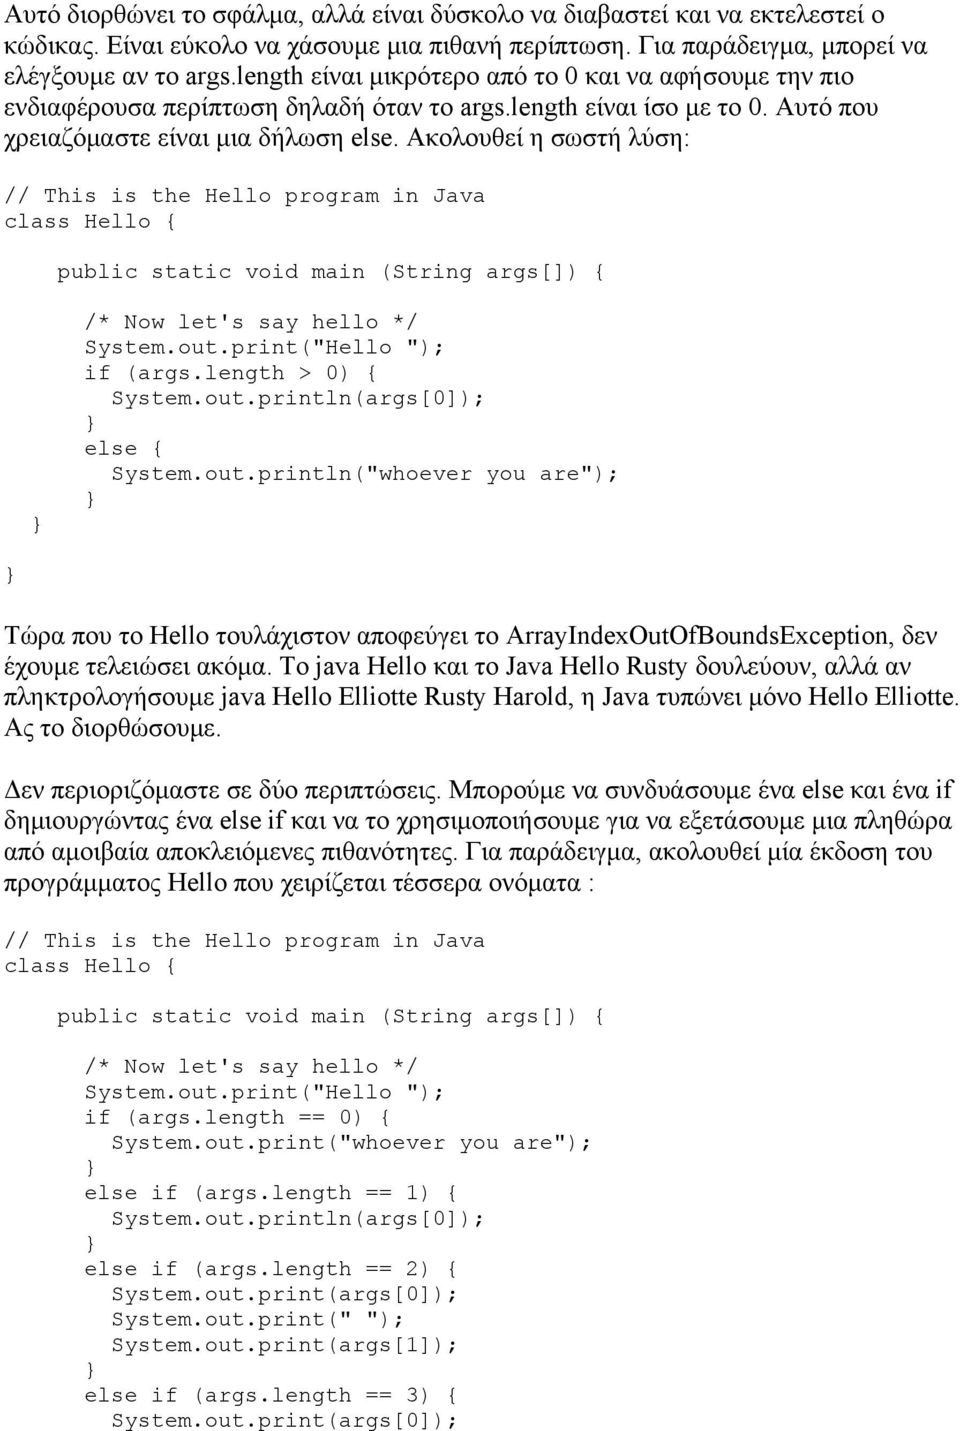 Ακολουθεί η σωστή λύση: // This is the Hello program in Java class Hello { public static void main (String args[]) { /* Now let's say hello */ System.out.print("Hello "); if (args.